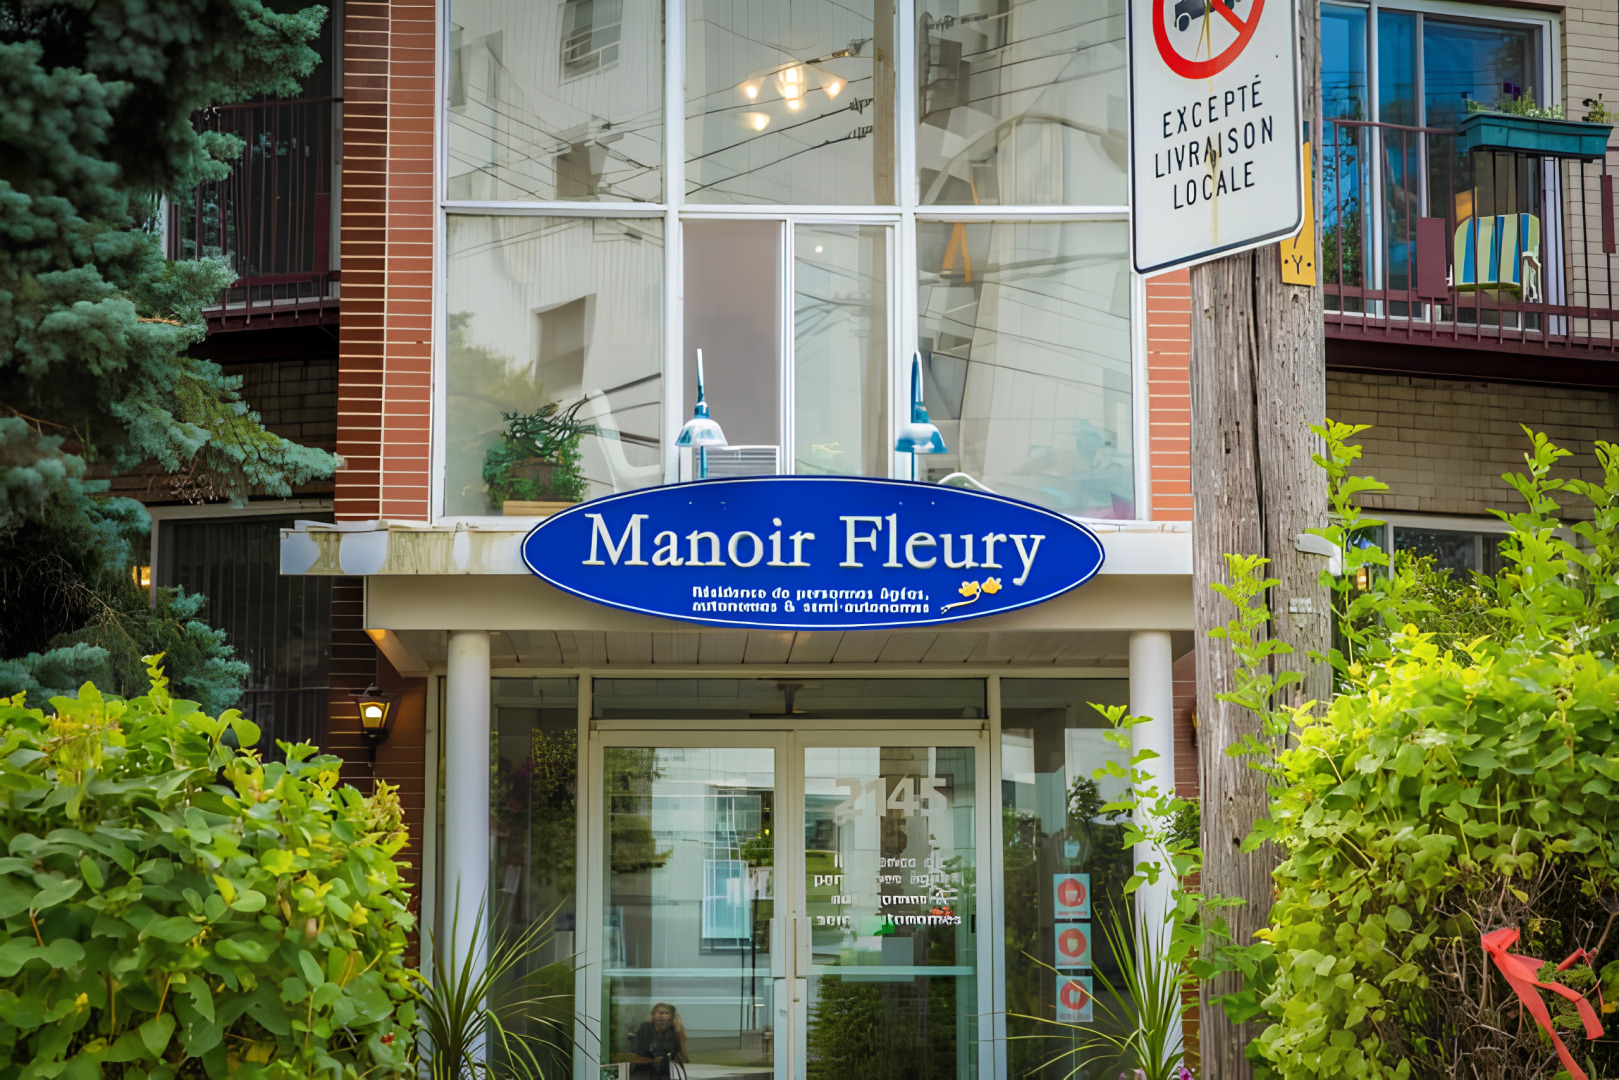 Manoir Fleury